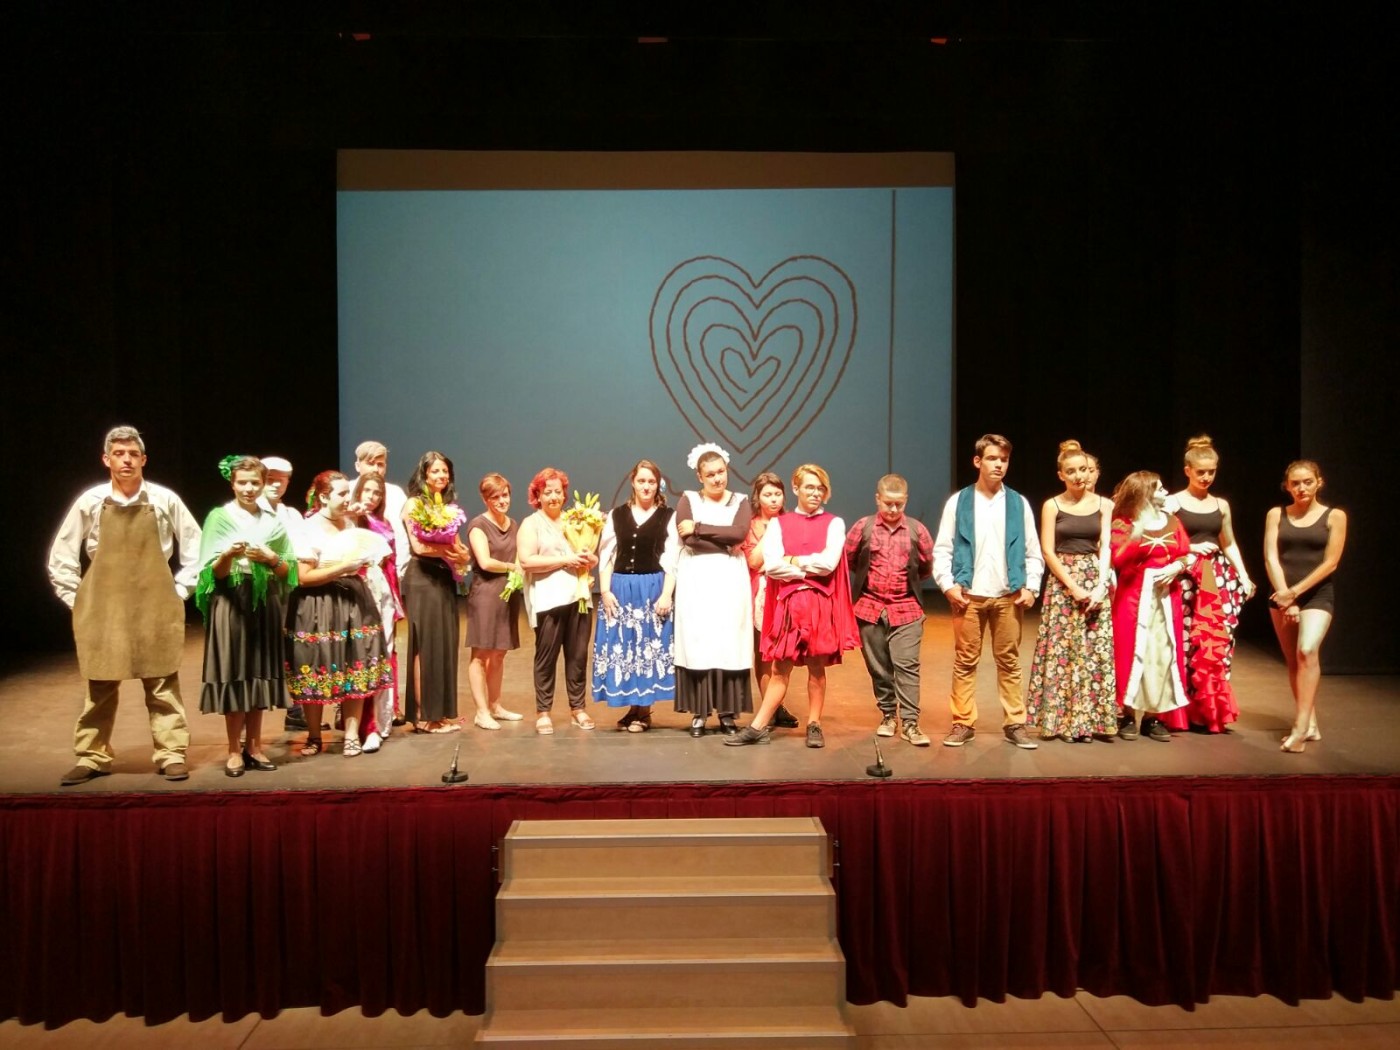 El grupo de teatro Metamosfosis actúa en el teatro Villa de Molina